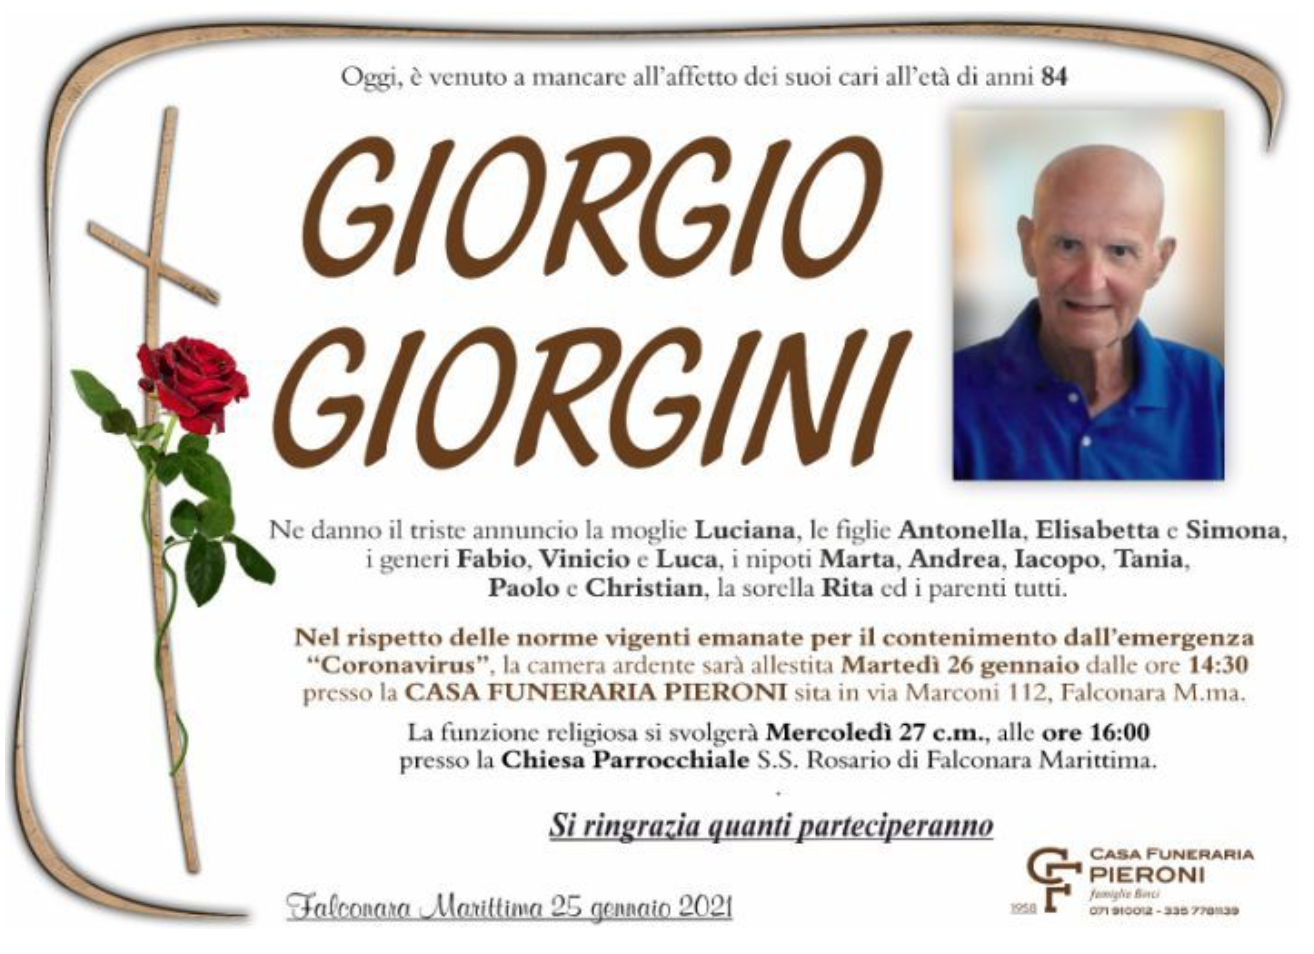 Giorgio Giorgini